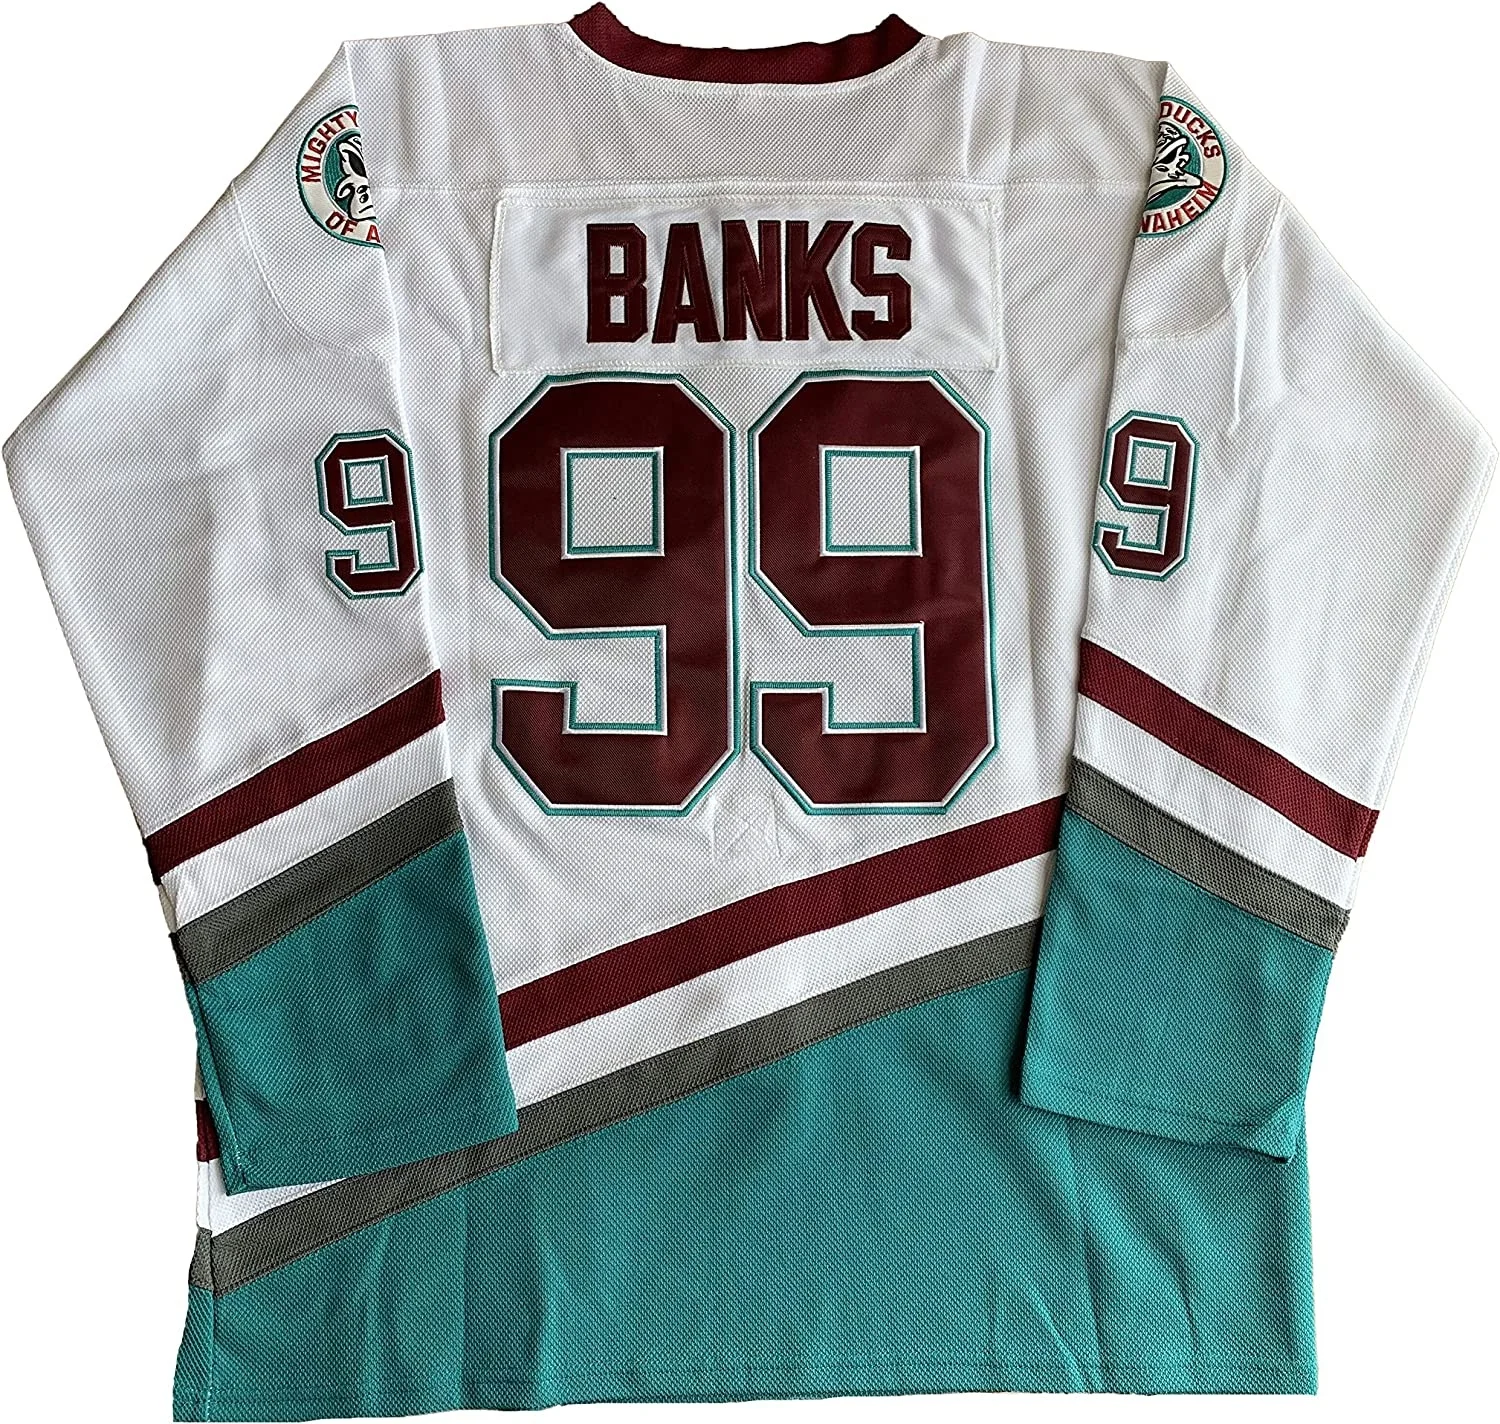 

Спортивные игры Лига 96 # CONWAY, мужские Адам Бэнкс 99 # могучие утки, трикотажные изделия для хоккея с шайбой, сшитые белые S-3XL